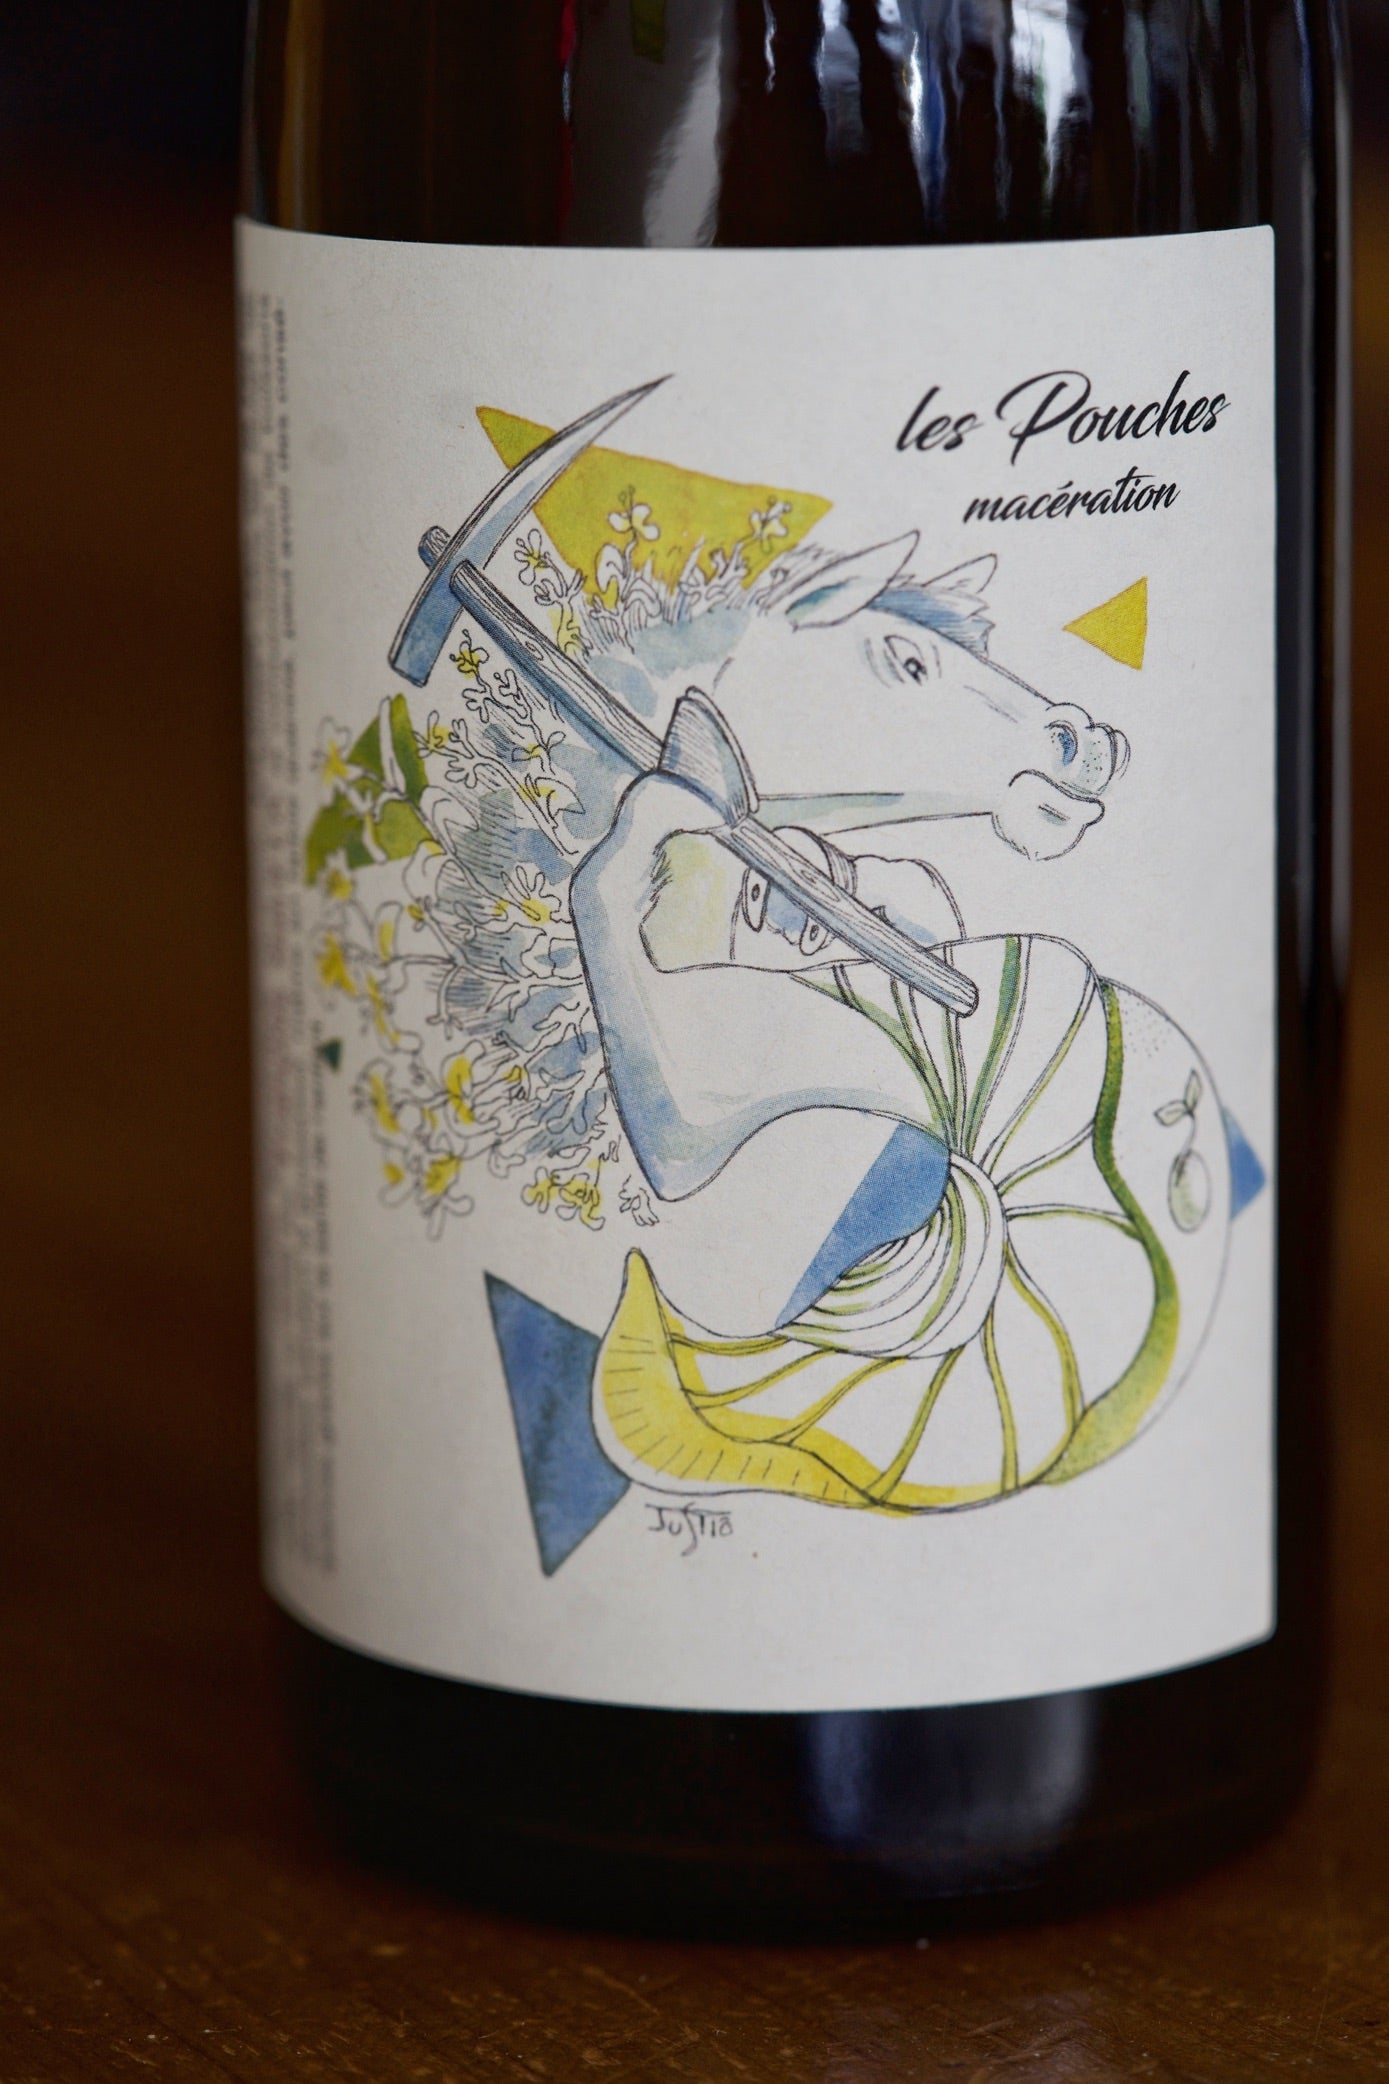 Vin de France White "Les Pouches Macération" Chenin Blanc, François Saint-lô 2020